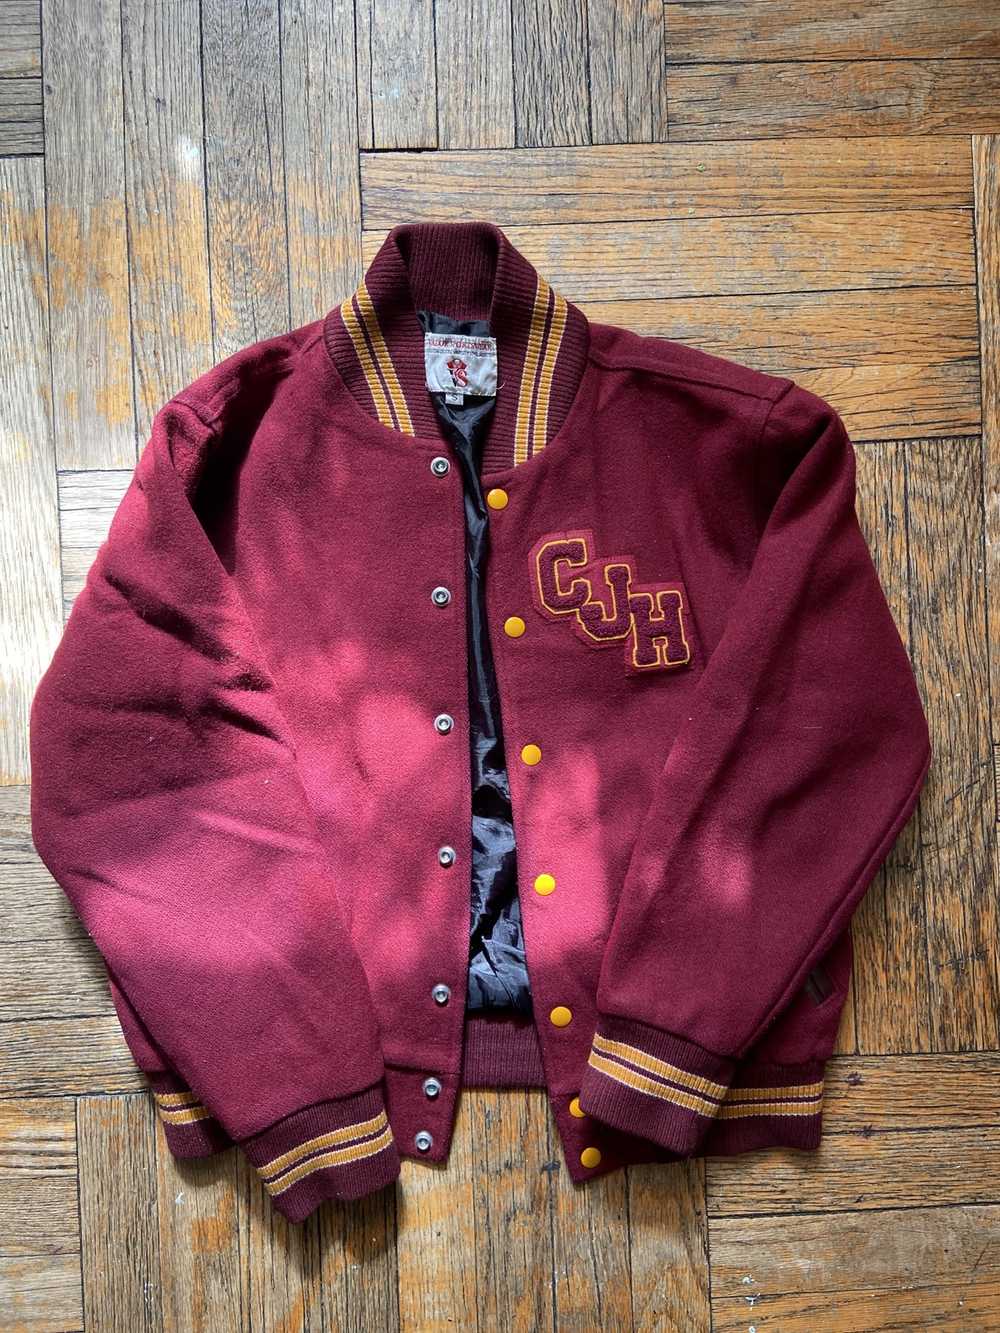 Vintage CJH Varsity Jacket - 1990s Vintage Varist… - image 1